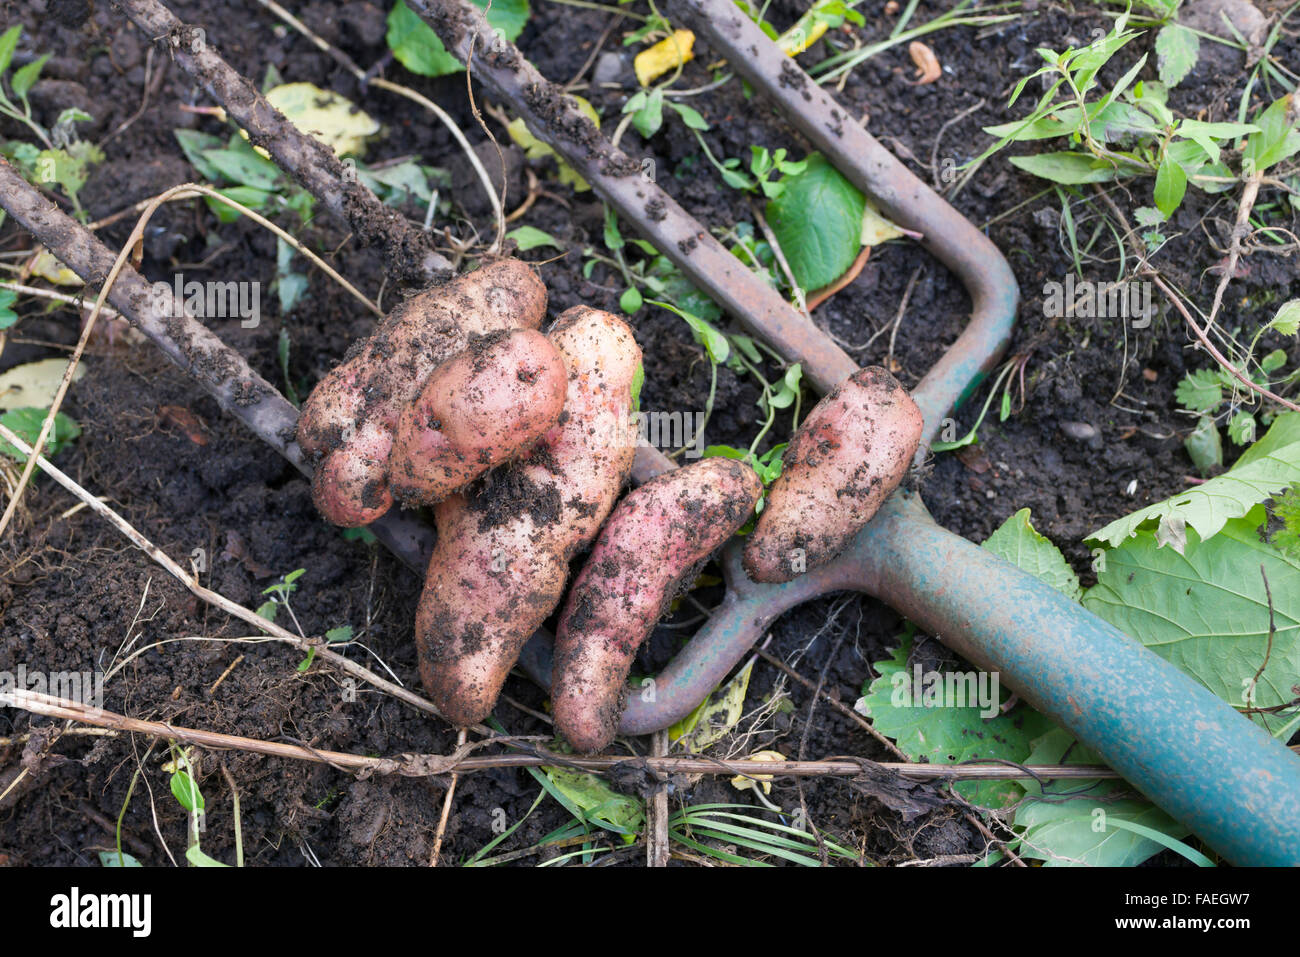 Digging up pink fir apple potatoes from home garden crop Stock Photo